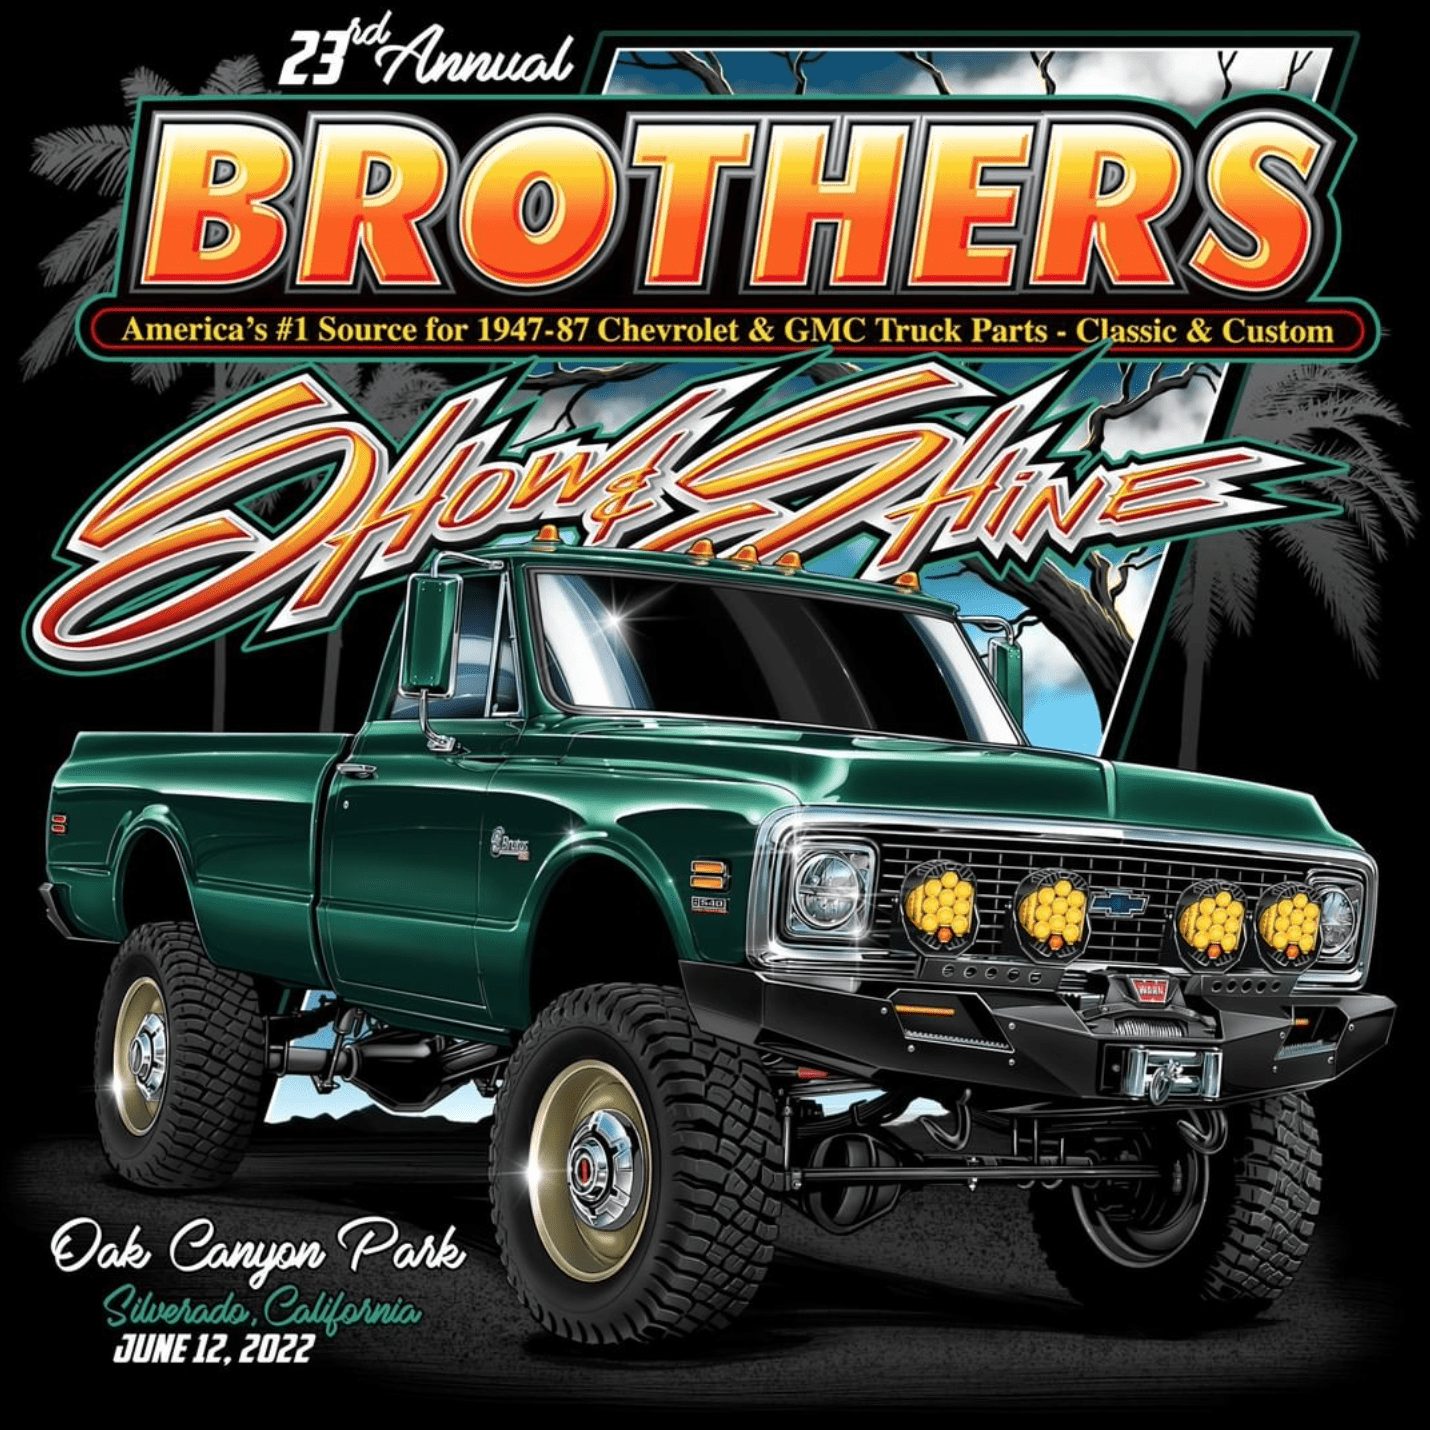 2022 Brother’s Truck Show June 12 Aldan American